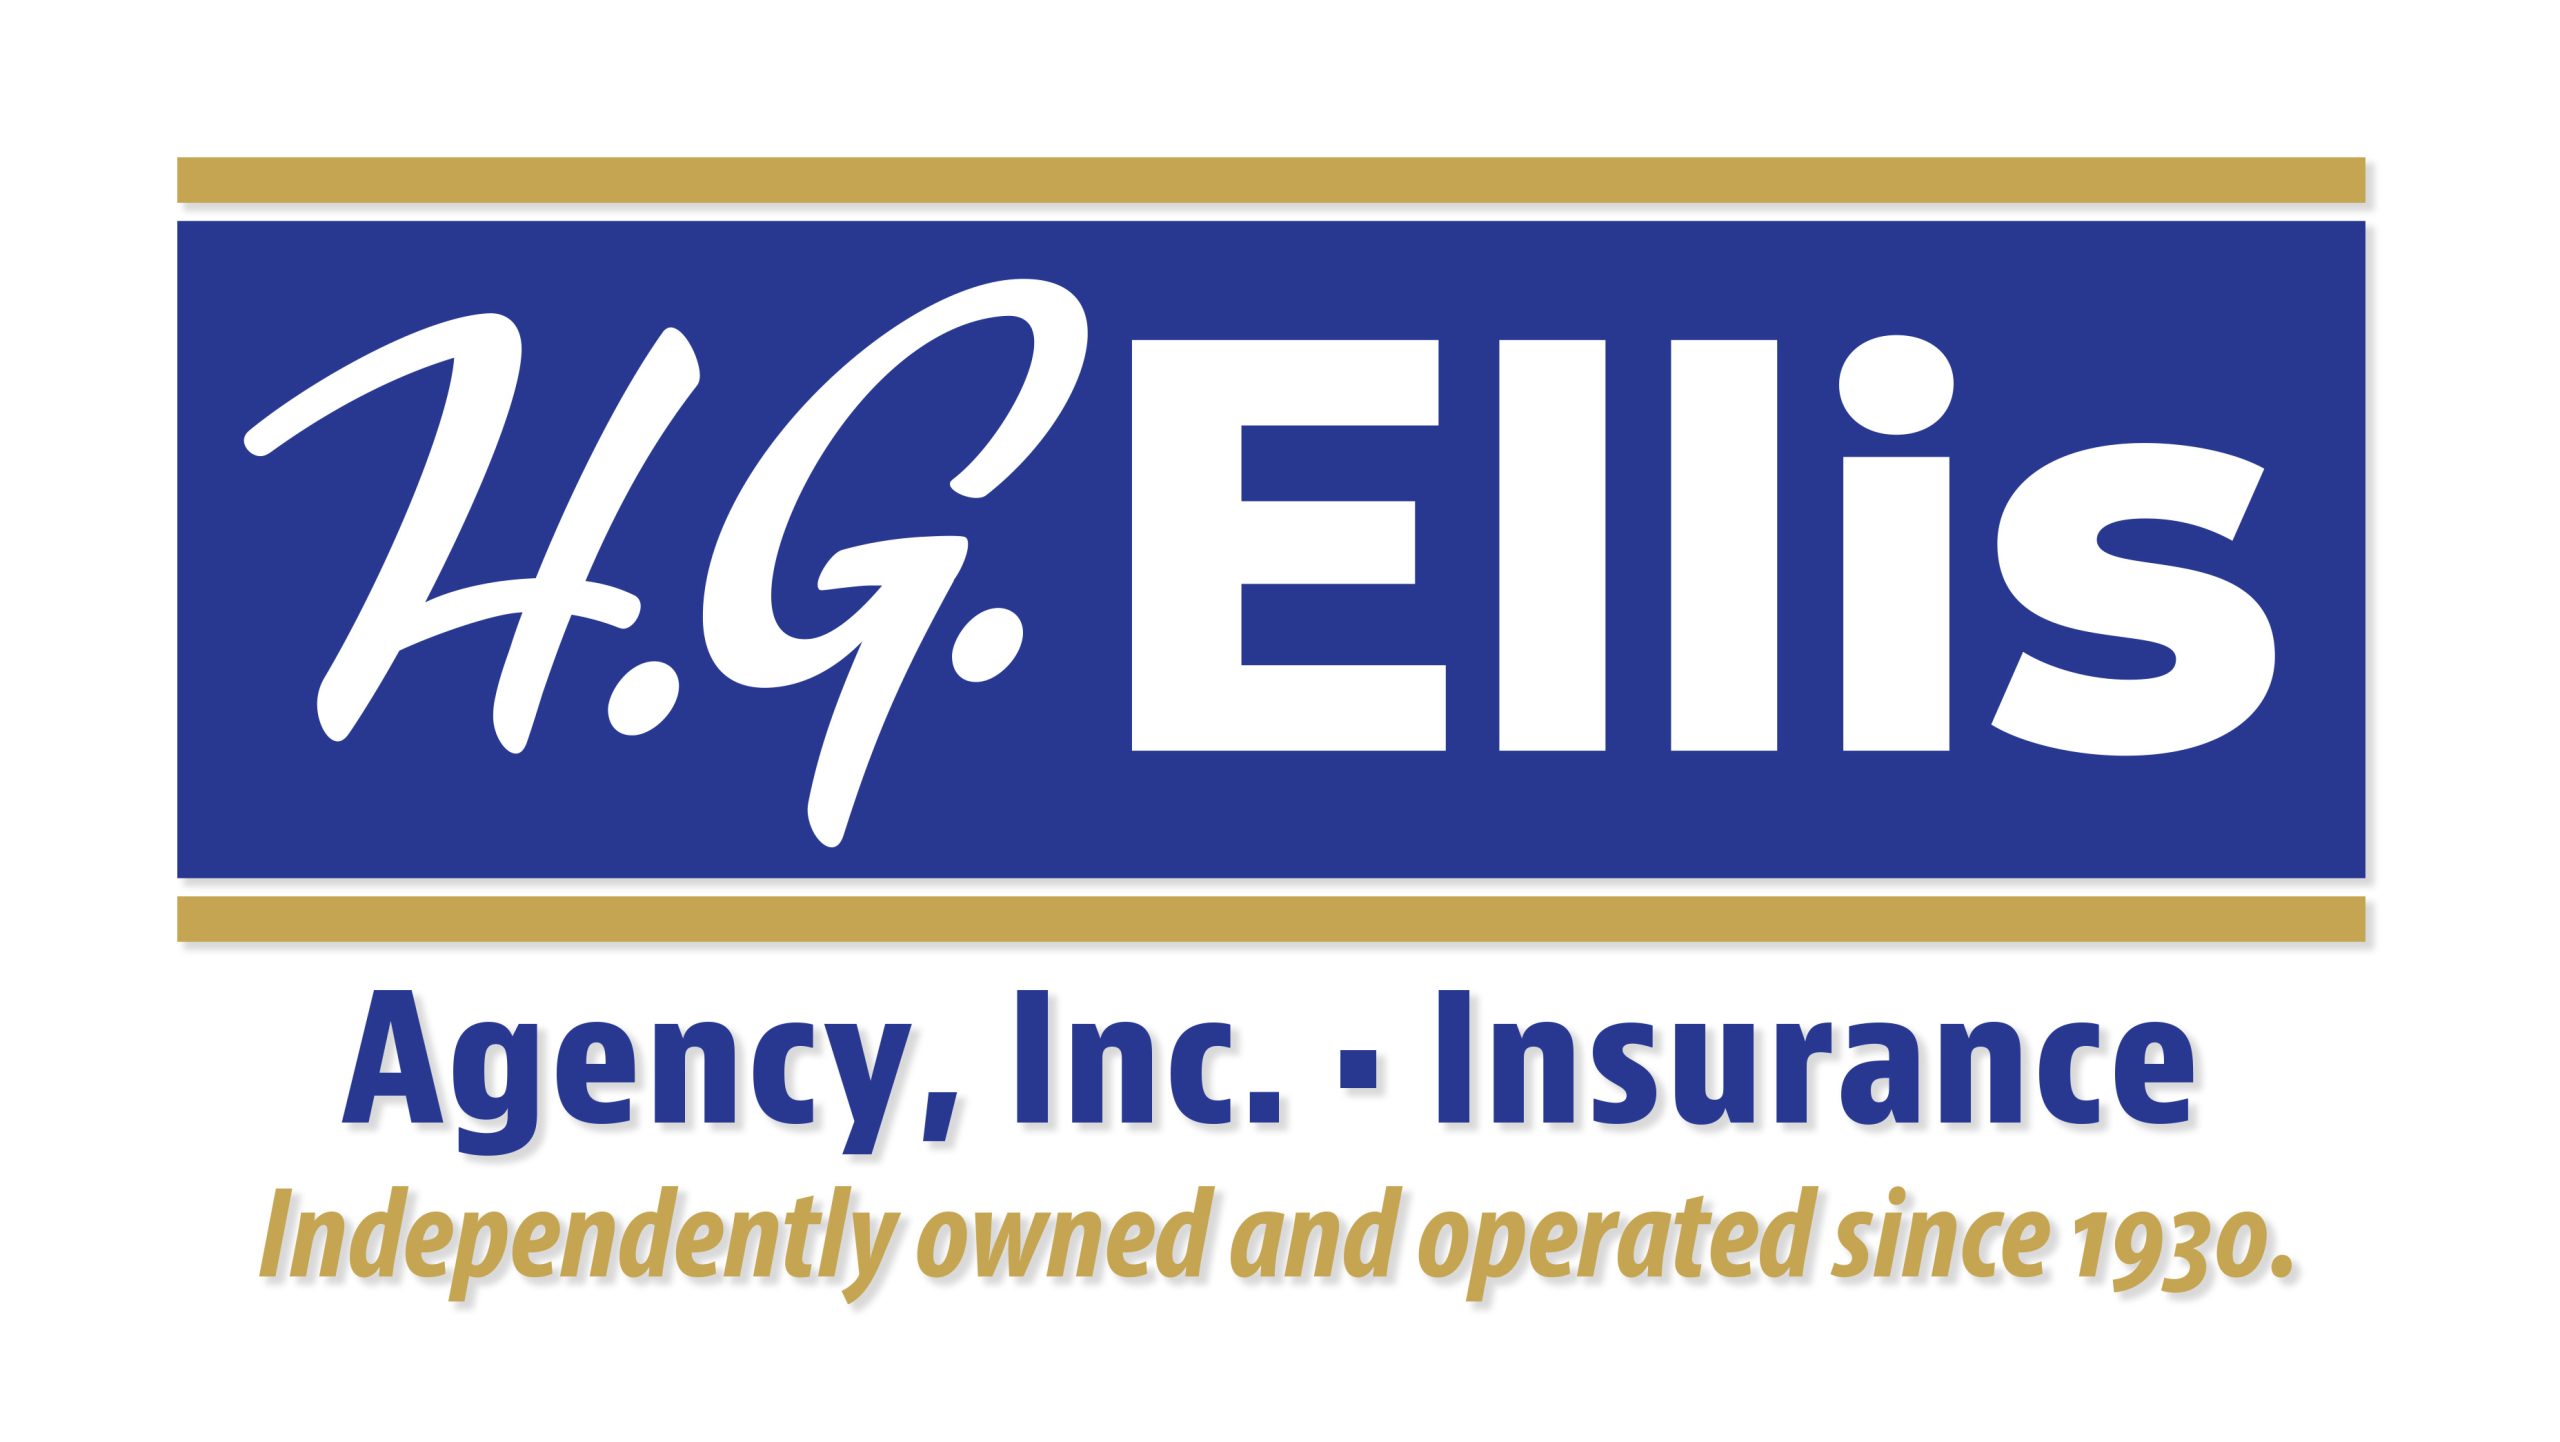 H.G. Ellis Agency, Inc.